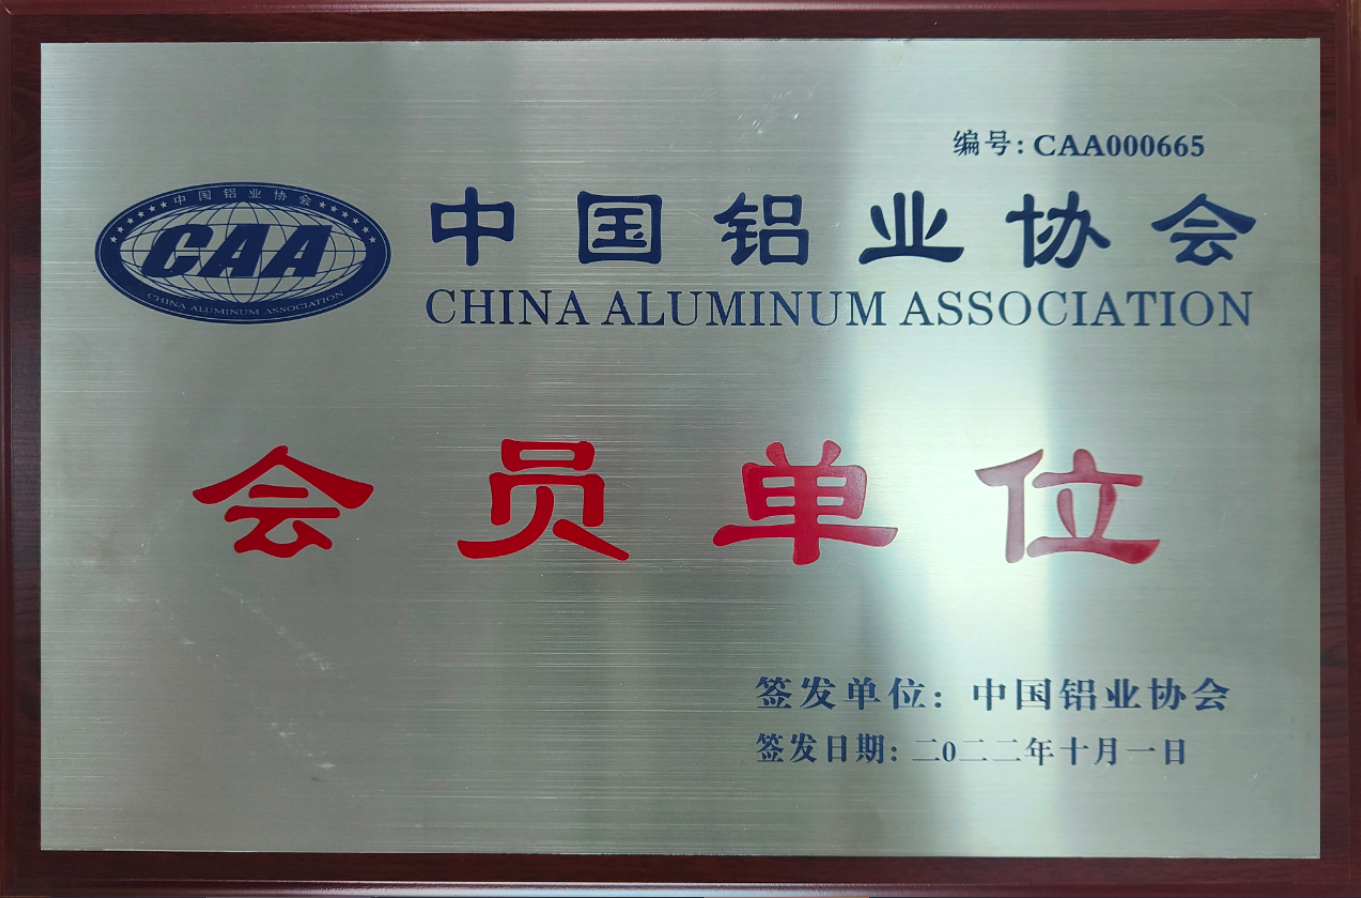 好消息 | 江苏飞拓获批中国铝业协会会员单位